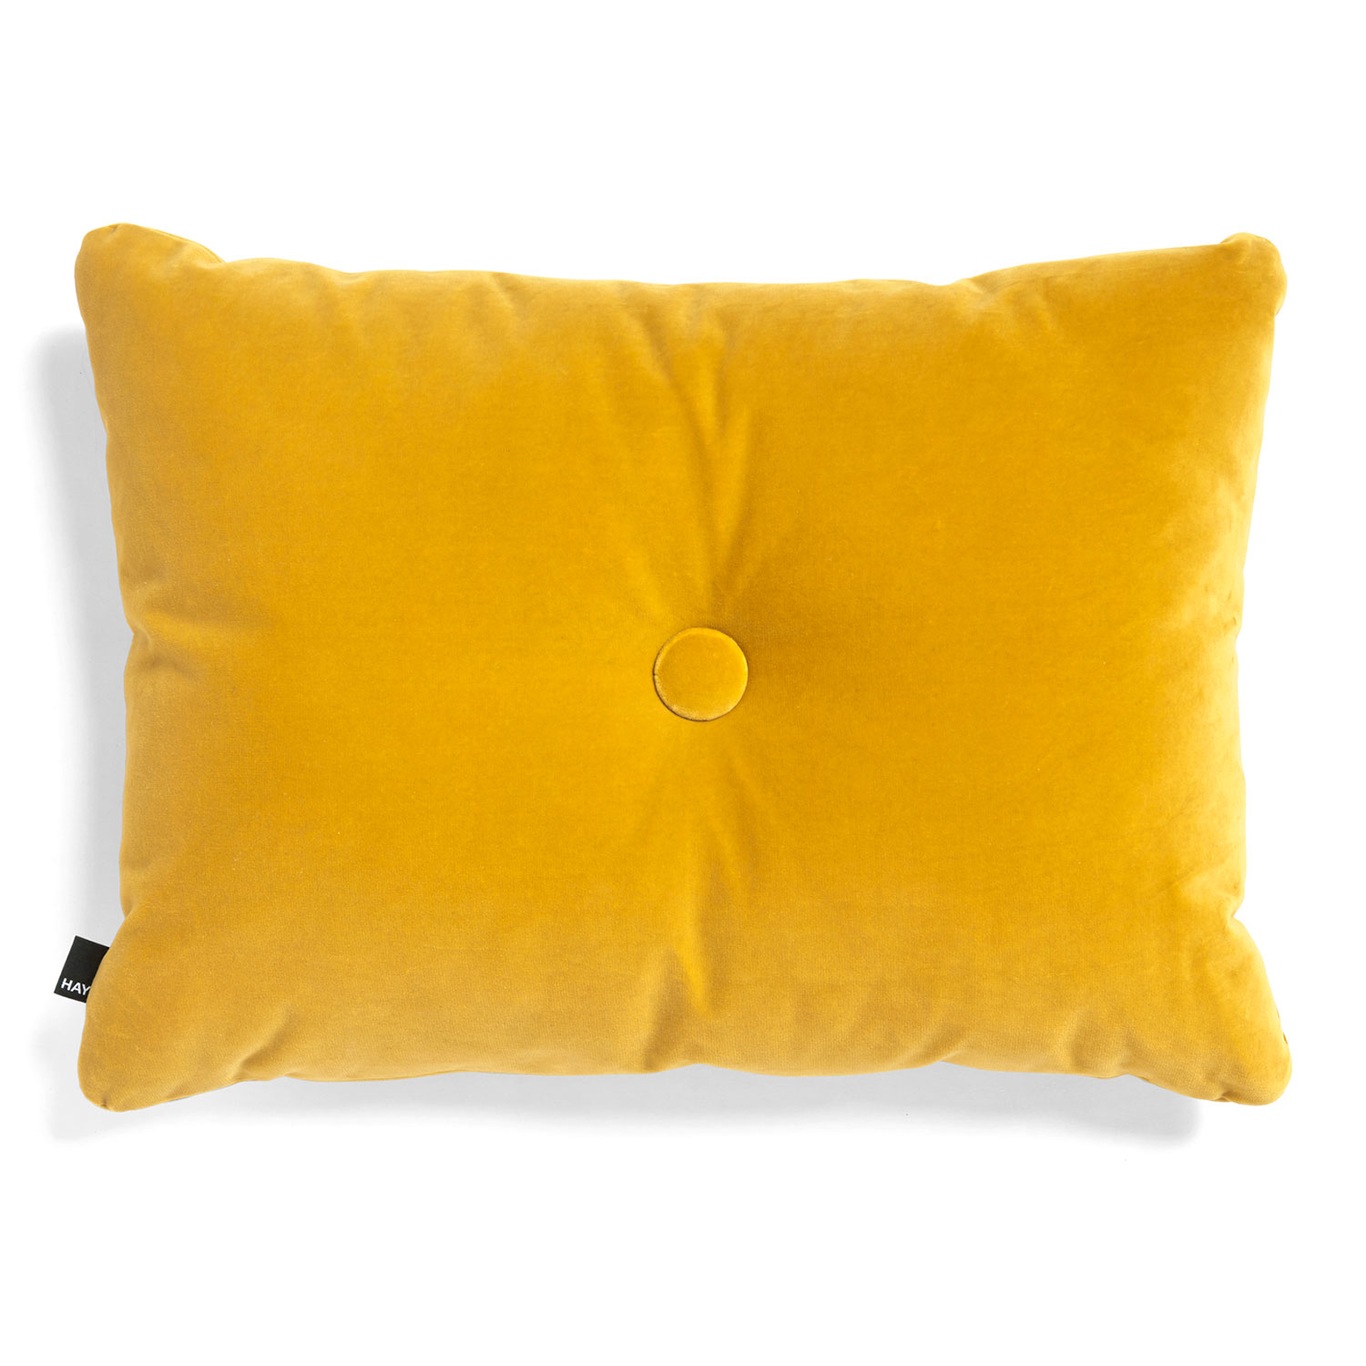 Dot Cushion Soft 1 Dot, Yellow